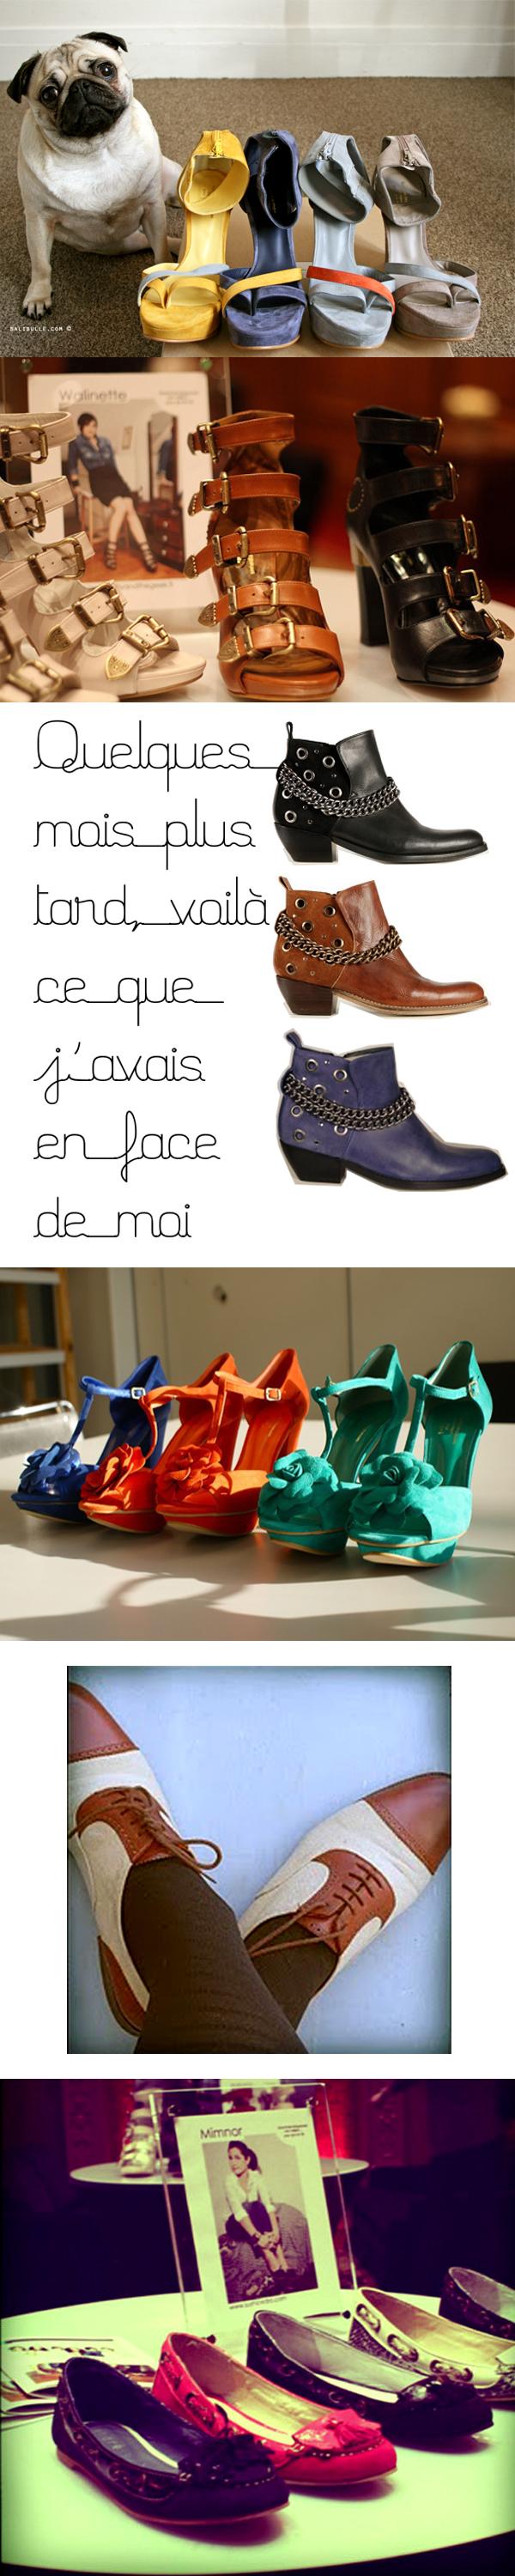 6 blogueuses créent des chaussures pour André. De haut en bas: Ballibulle, Walinette, Coline, Violette, Miss Glitzy et Minmor. 